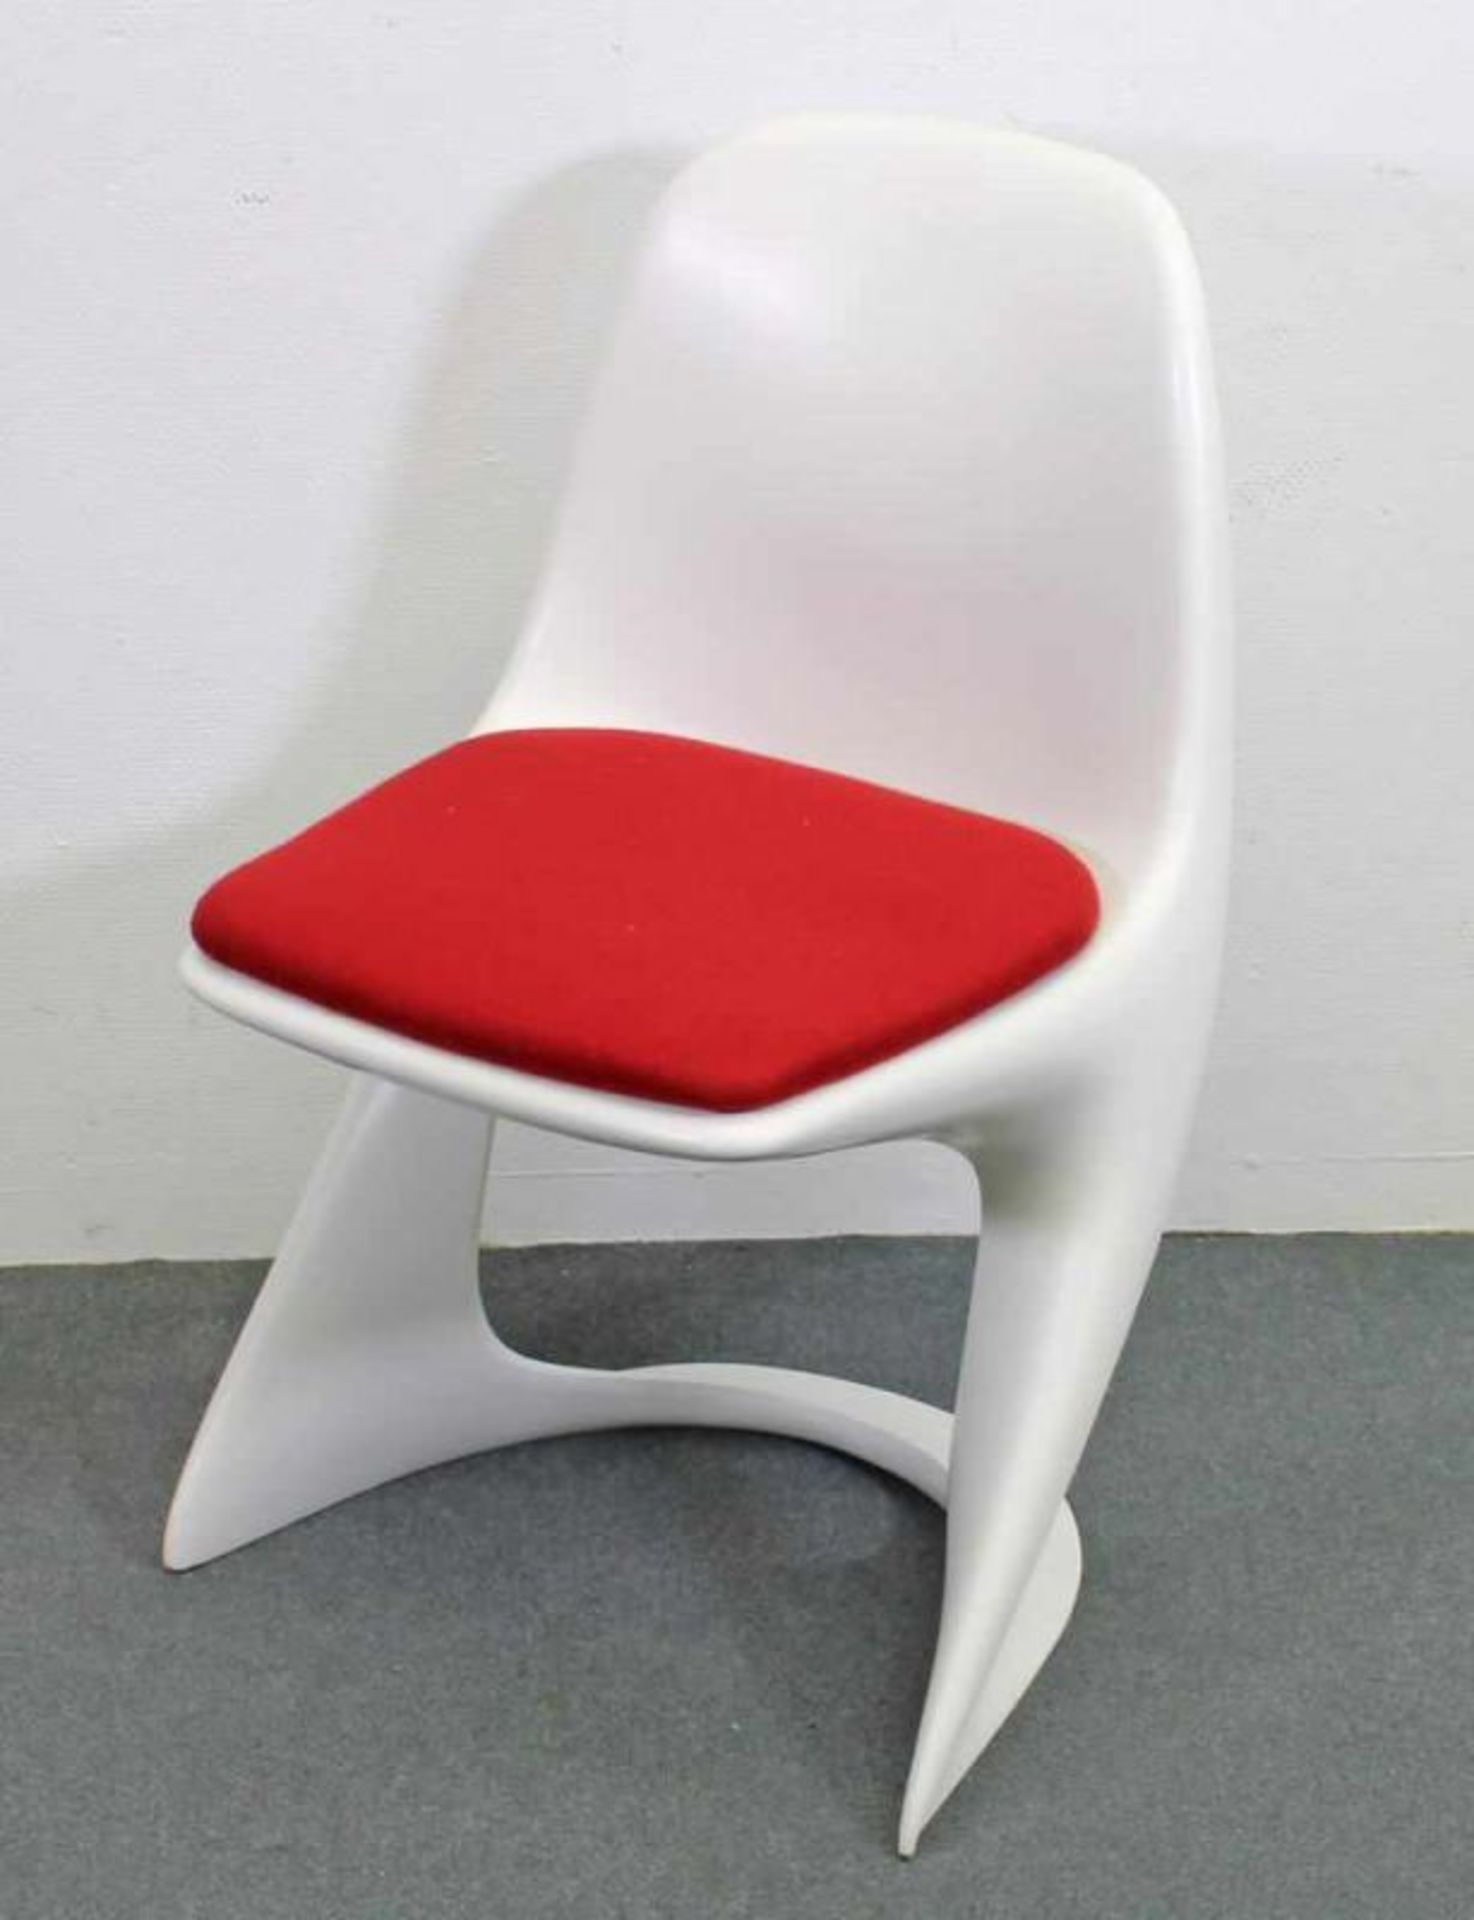 Designer-Stuhl, Fa. Casala, Modell 'Casalino', Entwurf von Alexander Begge 1971, weißes